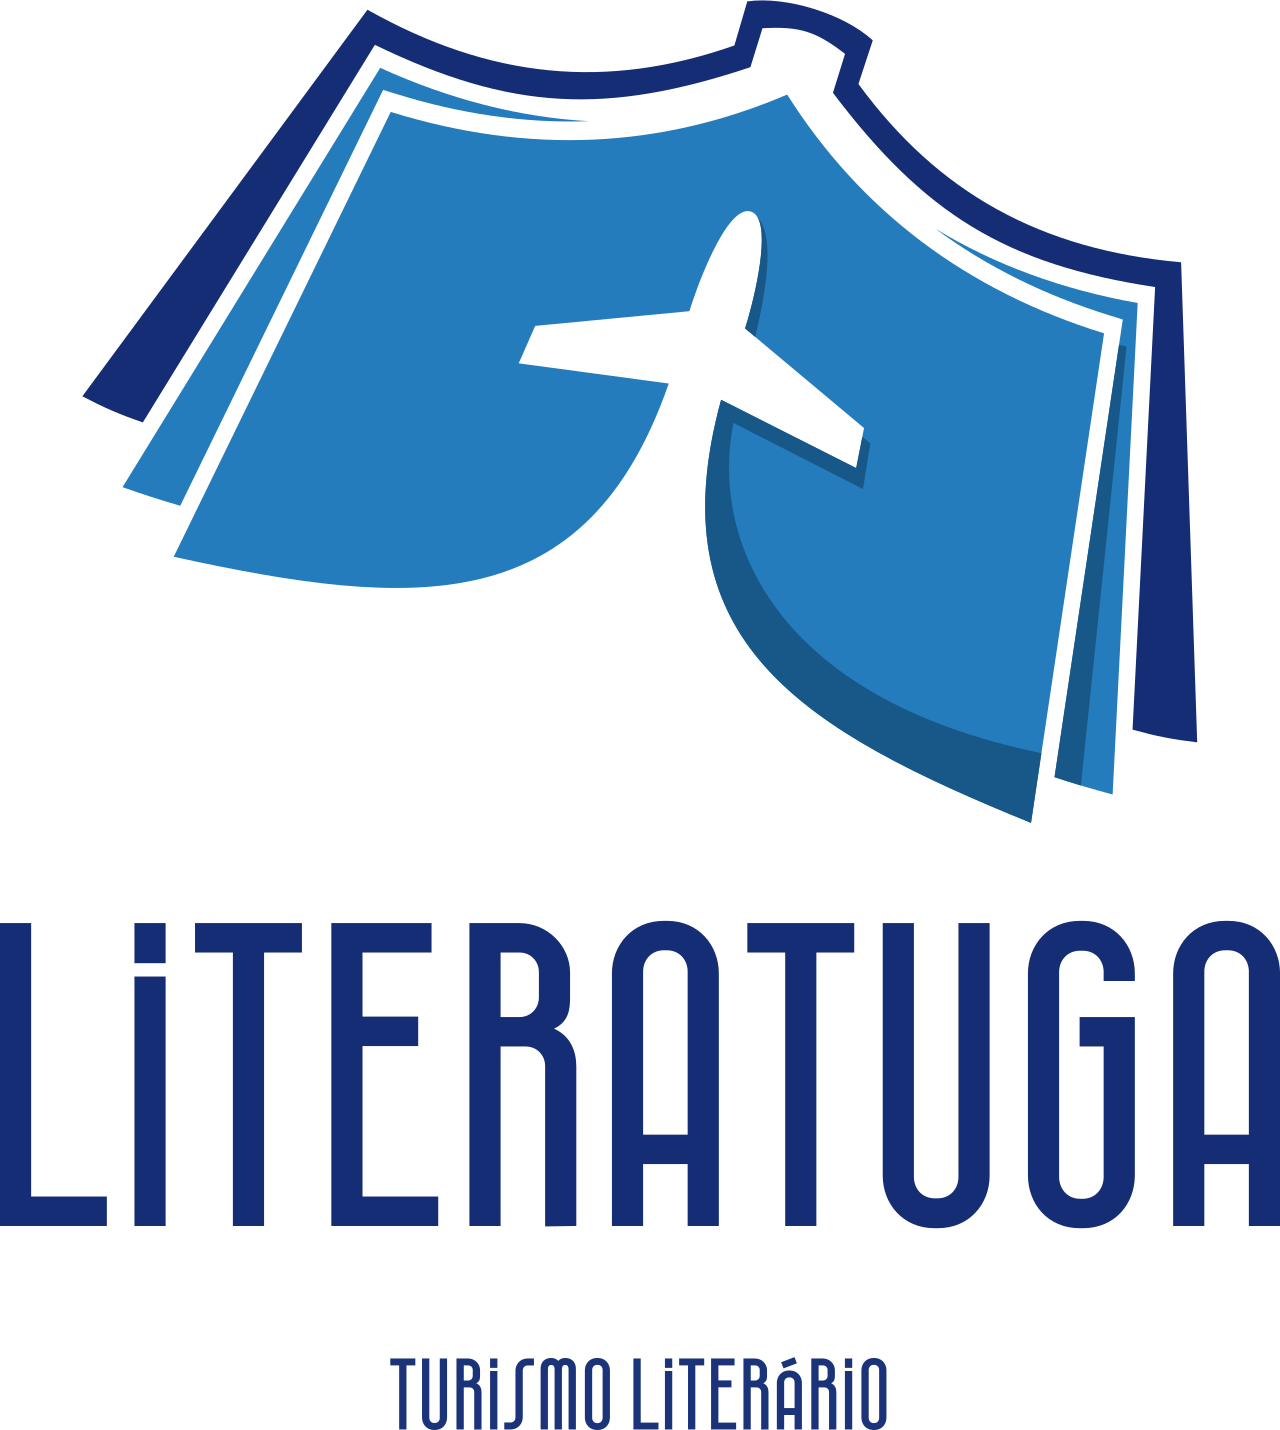 Literatuga - Turismo Literário's web page